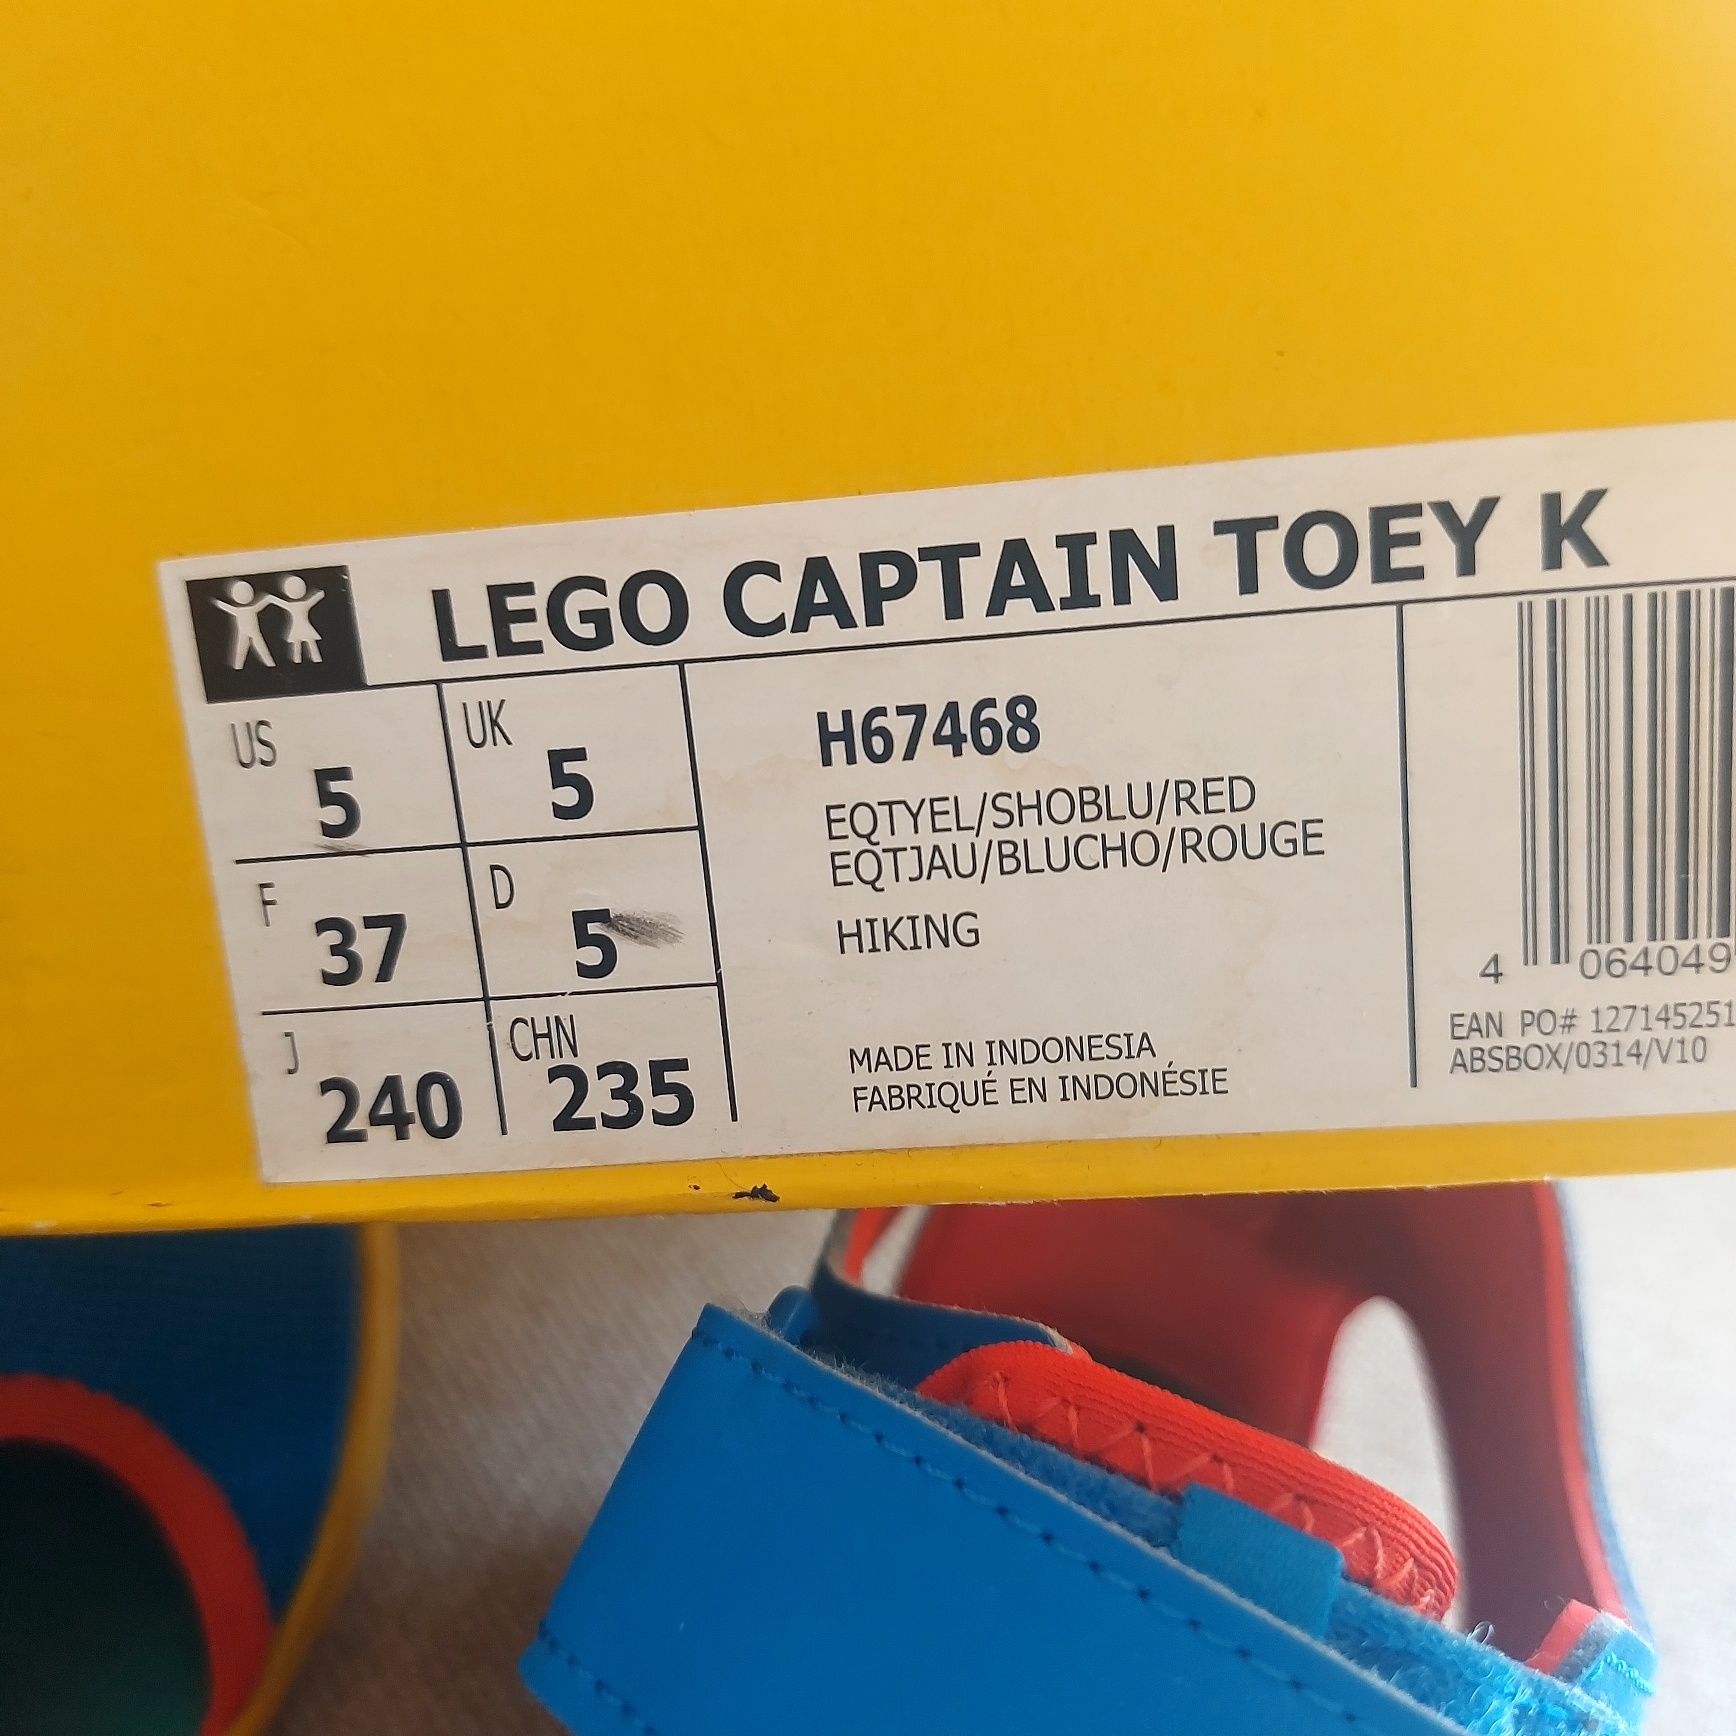 Sandałki dziecięce Lego Adidas